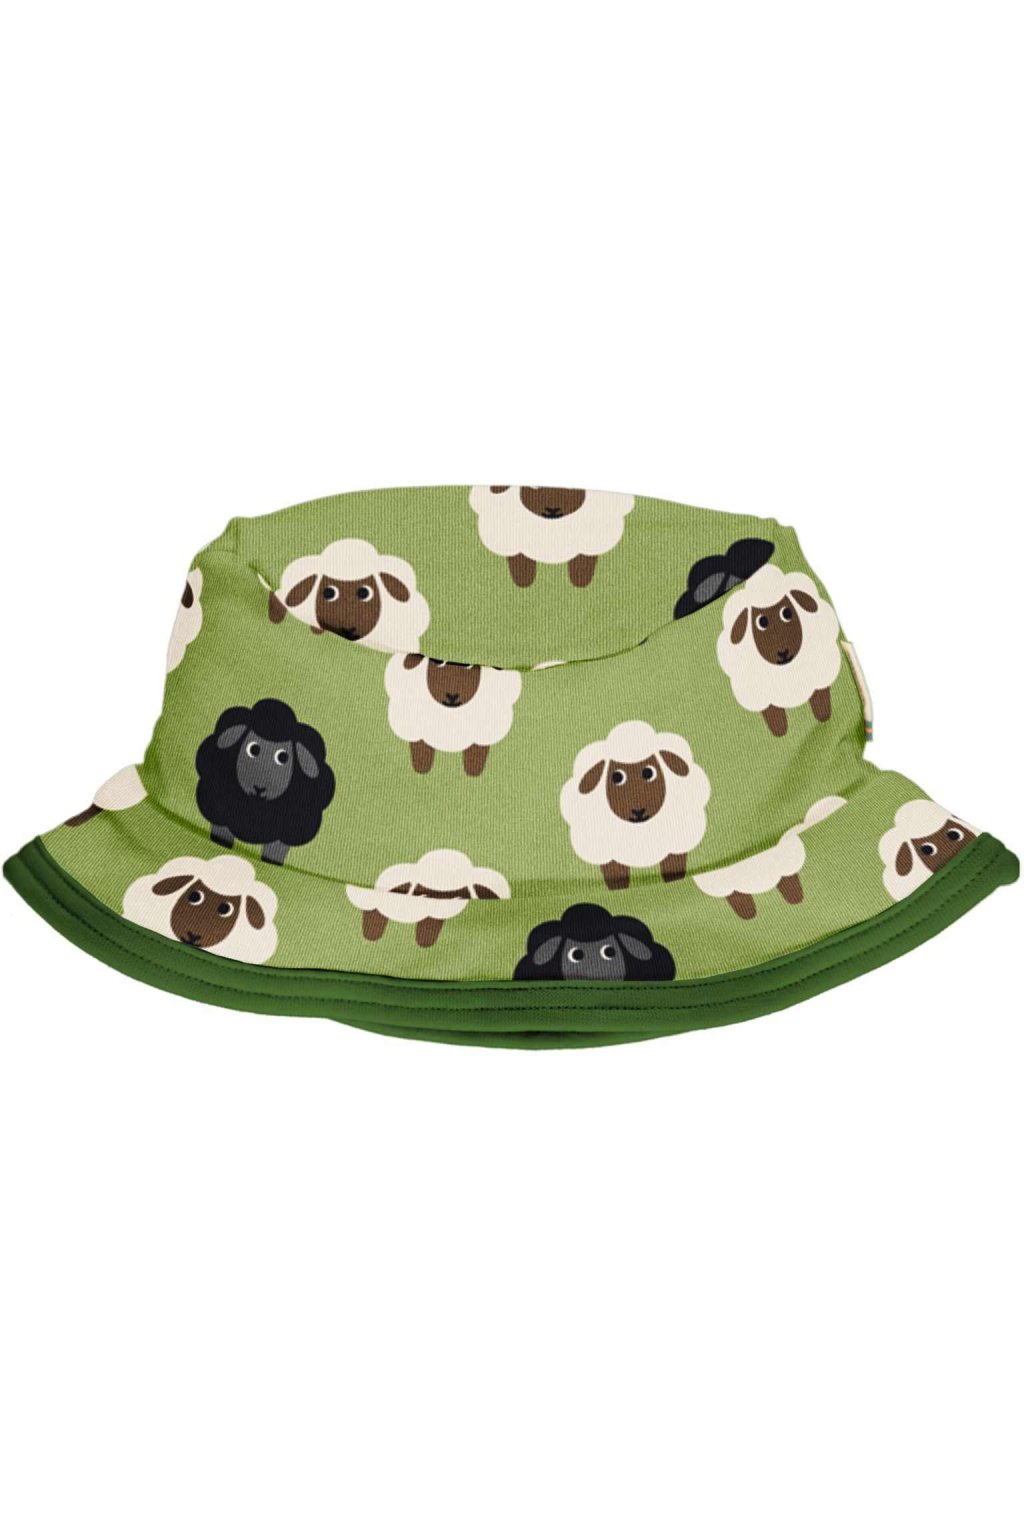 Letní dětský klobouček Sheep MAXOMORRA | Kaamo.cz